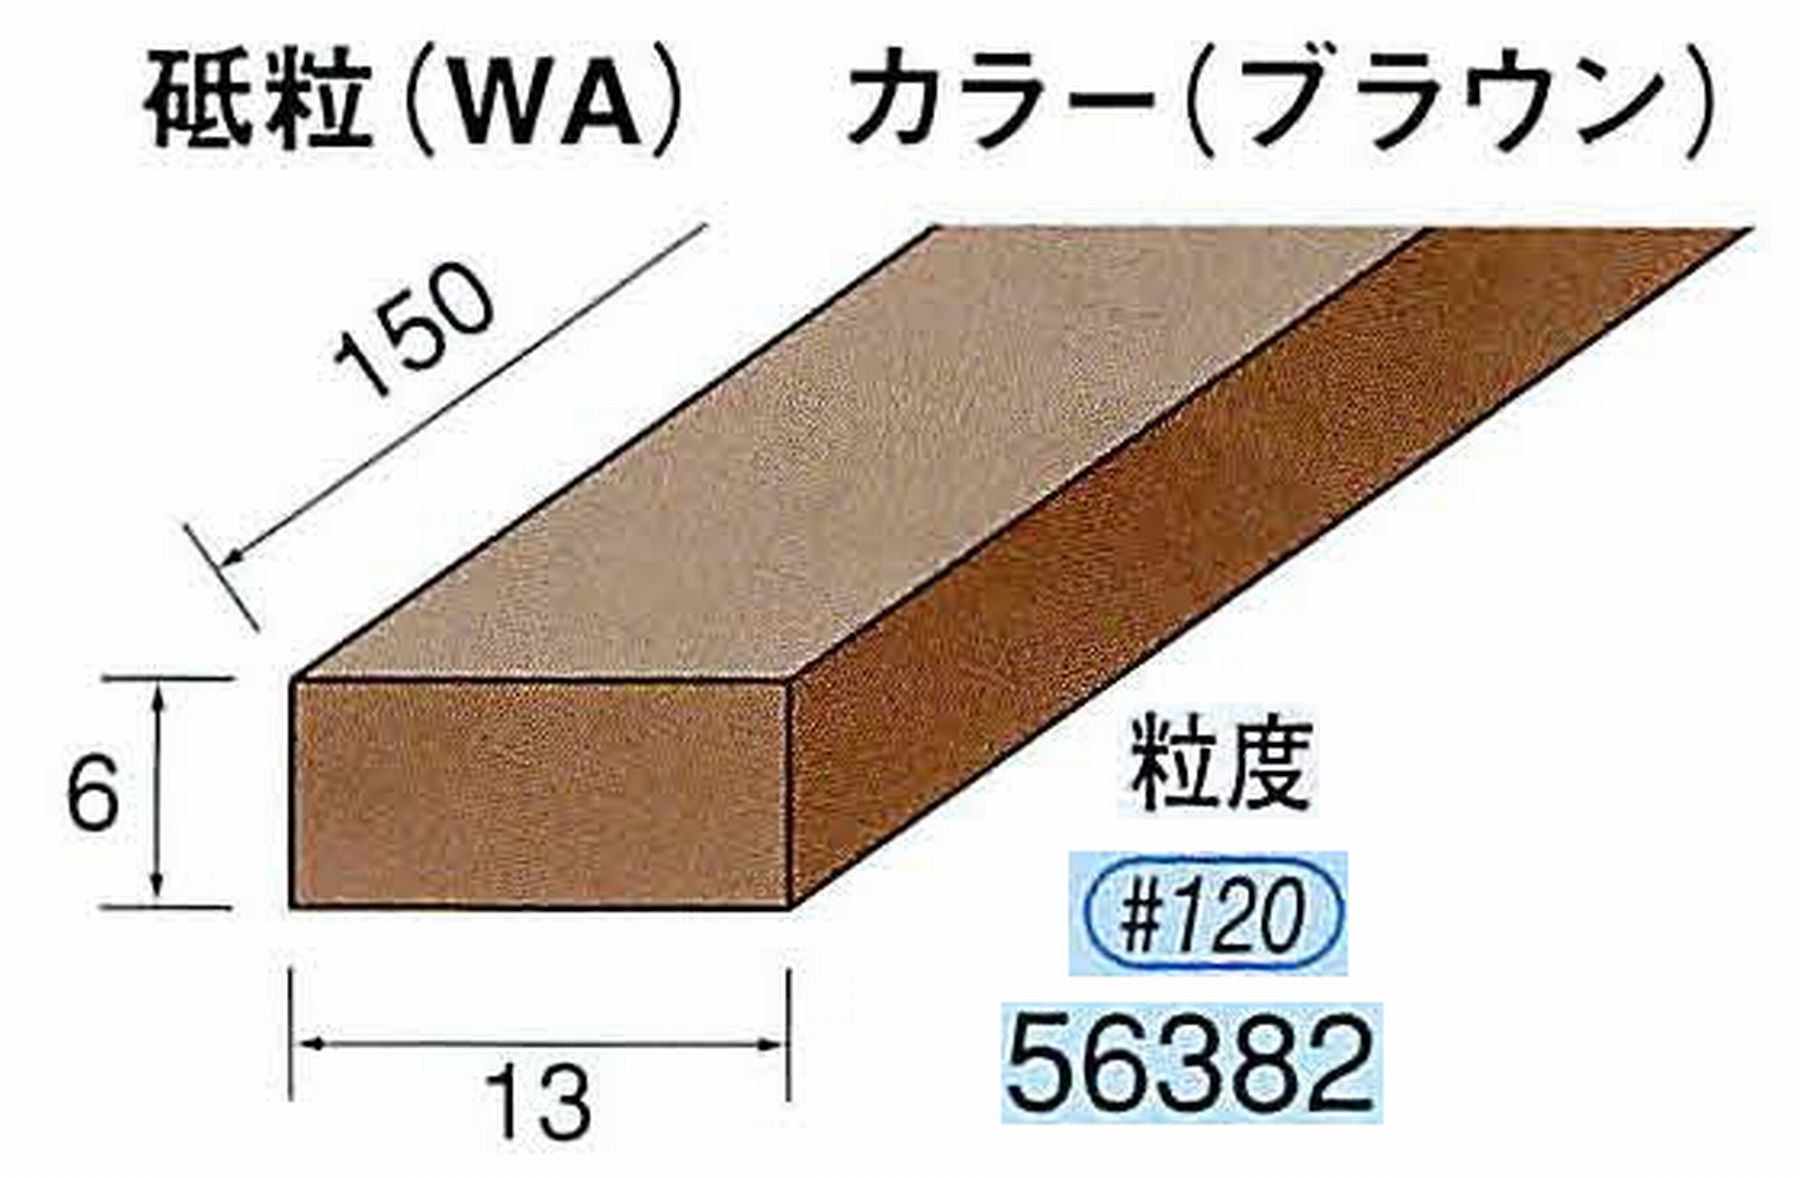 ナカニシ/NAKANISHI スティック砥石 ブラウン・フィニッシュシリーズ 砥粒(WA) 56382